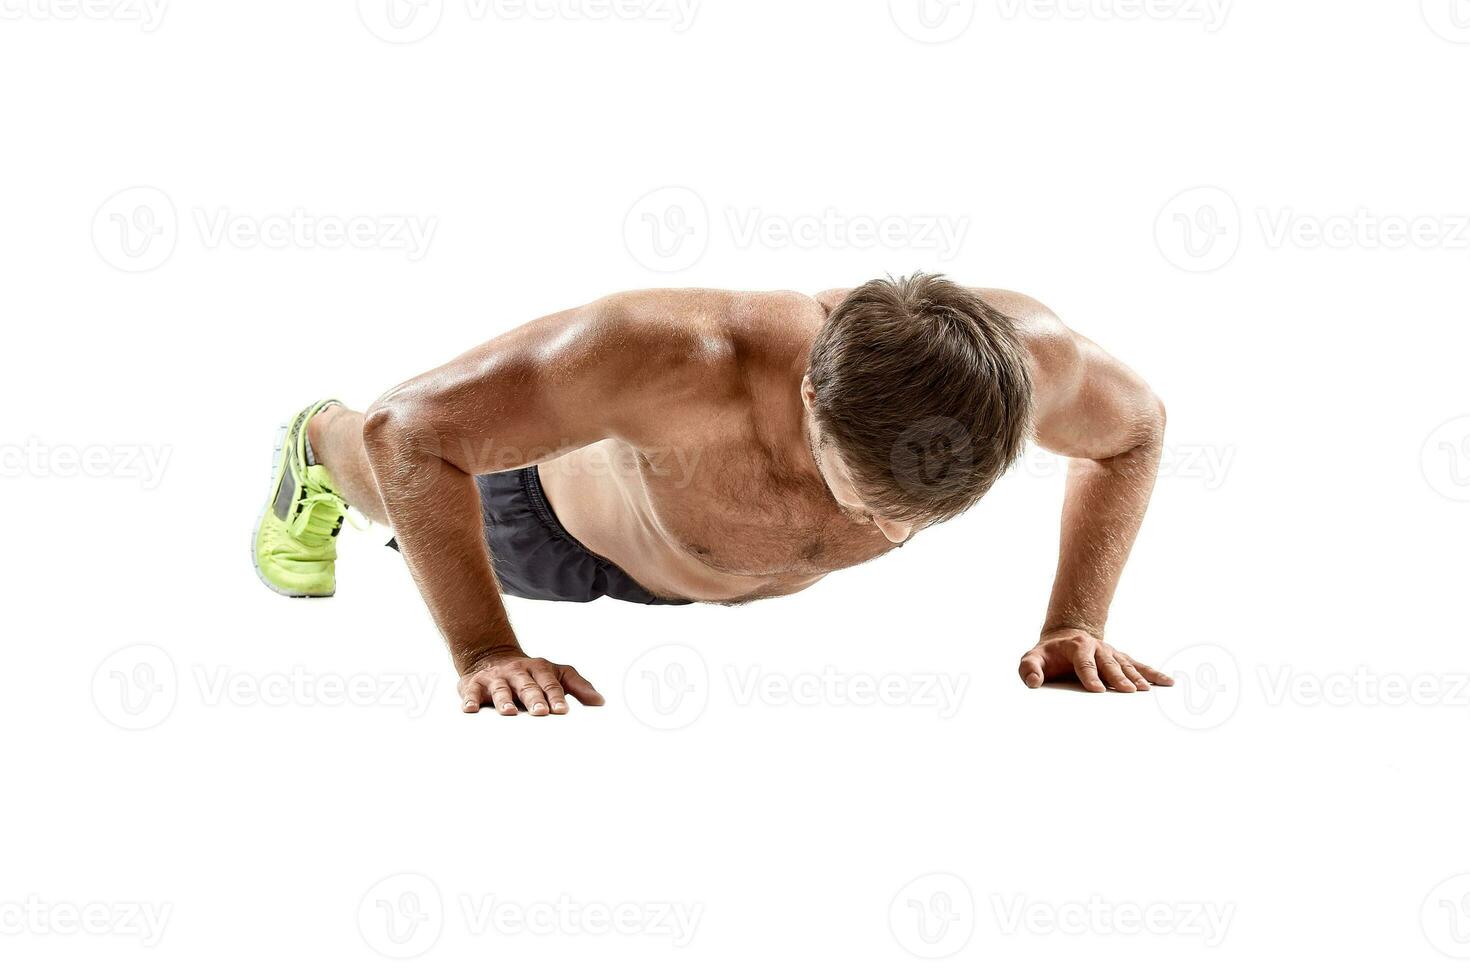 empujar arriba aptitud hombre haciendo hacer subir peso corporal ejercicio en gimnasio piso. atleta trabajando fuera cofre músculos fuerza formación adentro foto